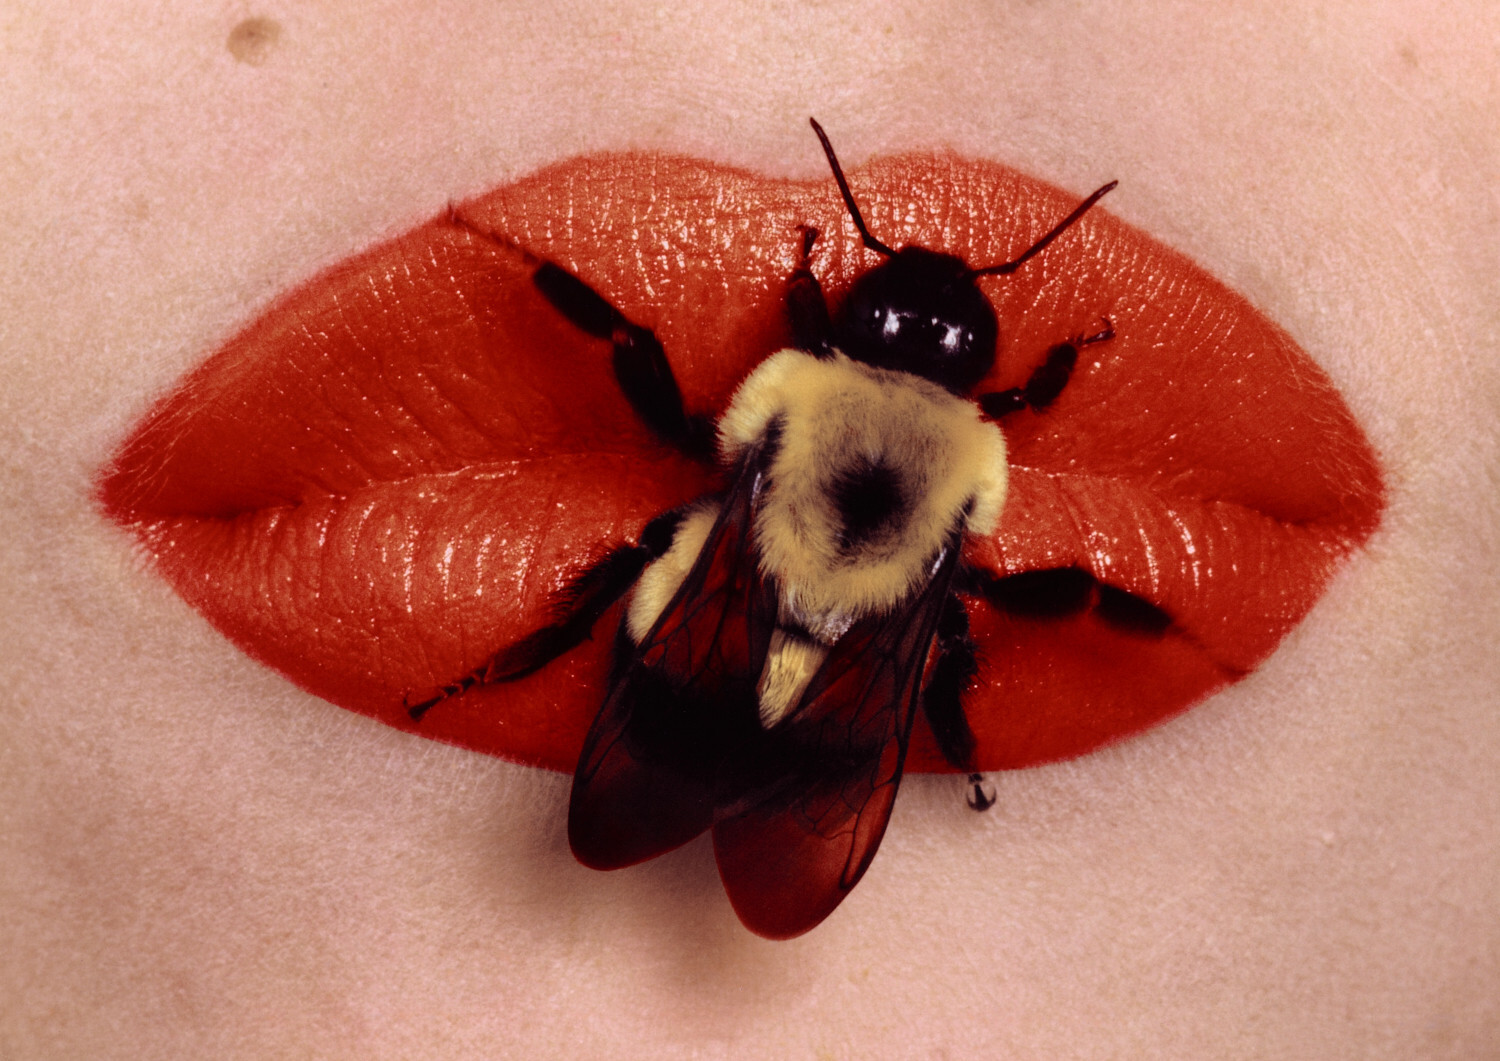 Пчела на губах, Нью-Йорк, 1995 год. Фотограф Ирвин Пенн